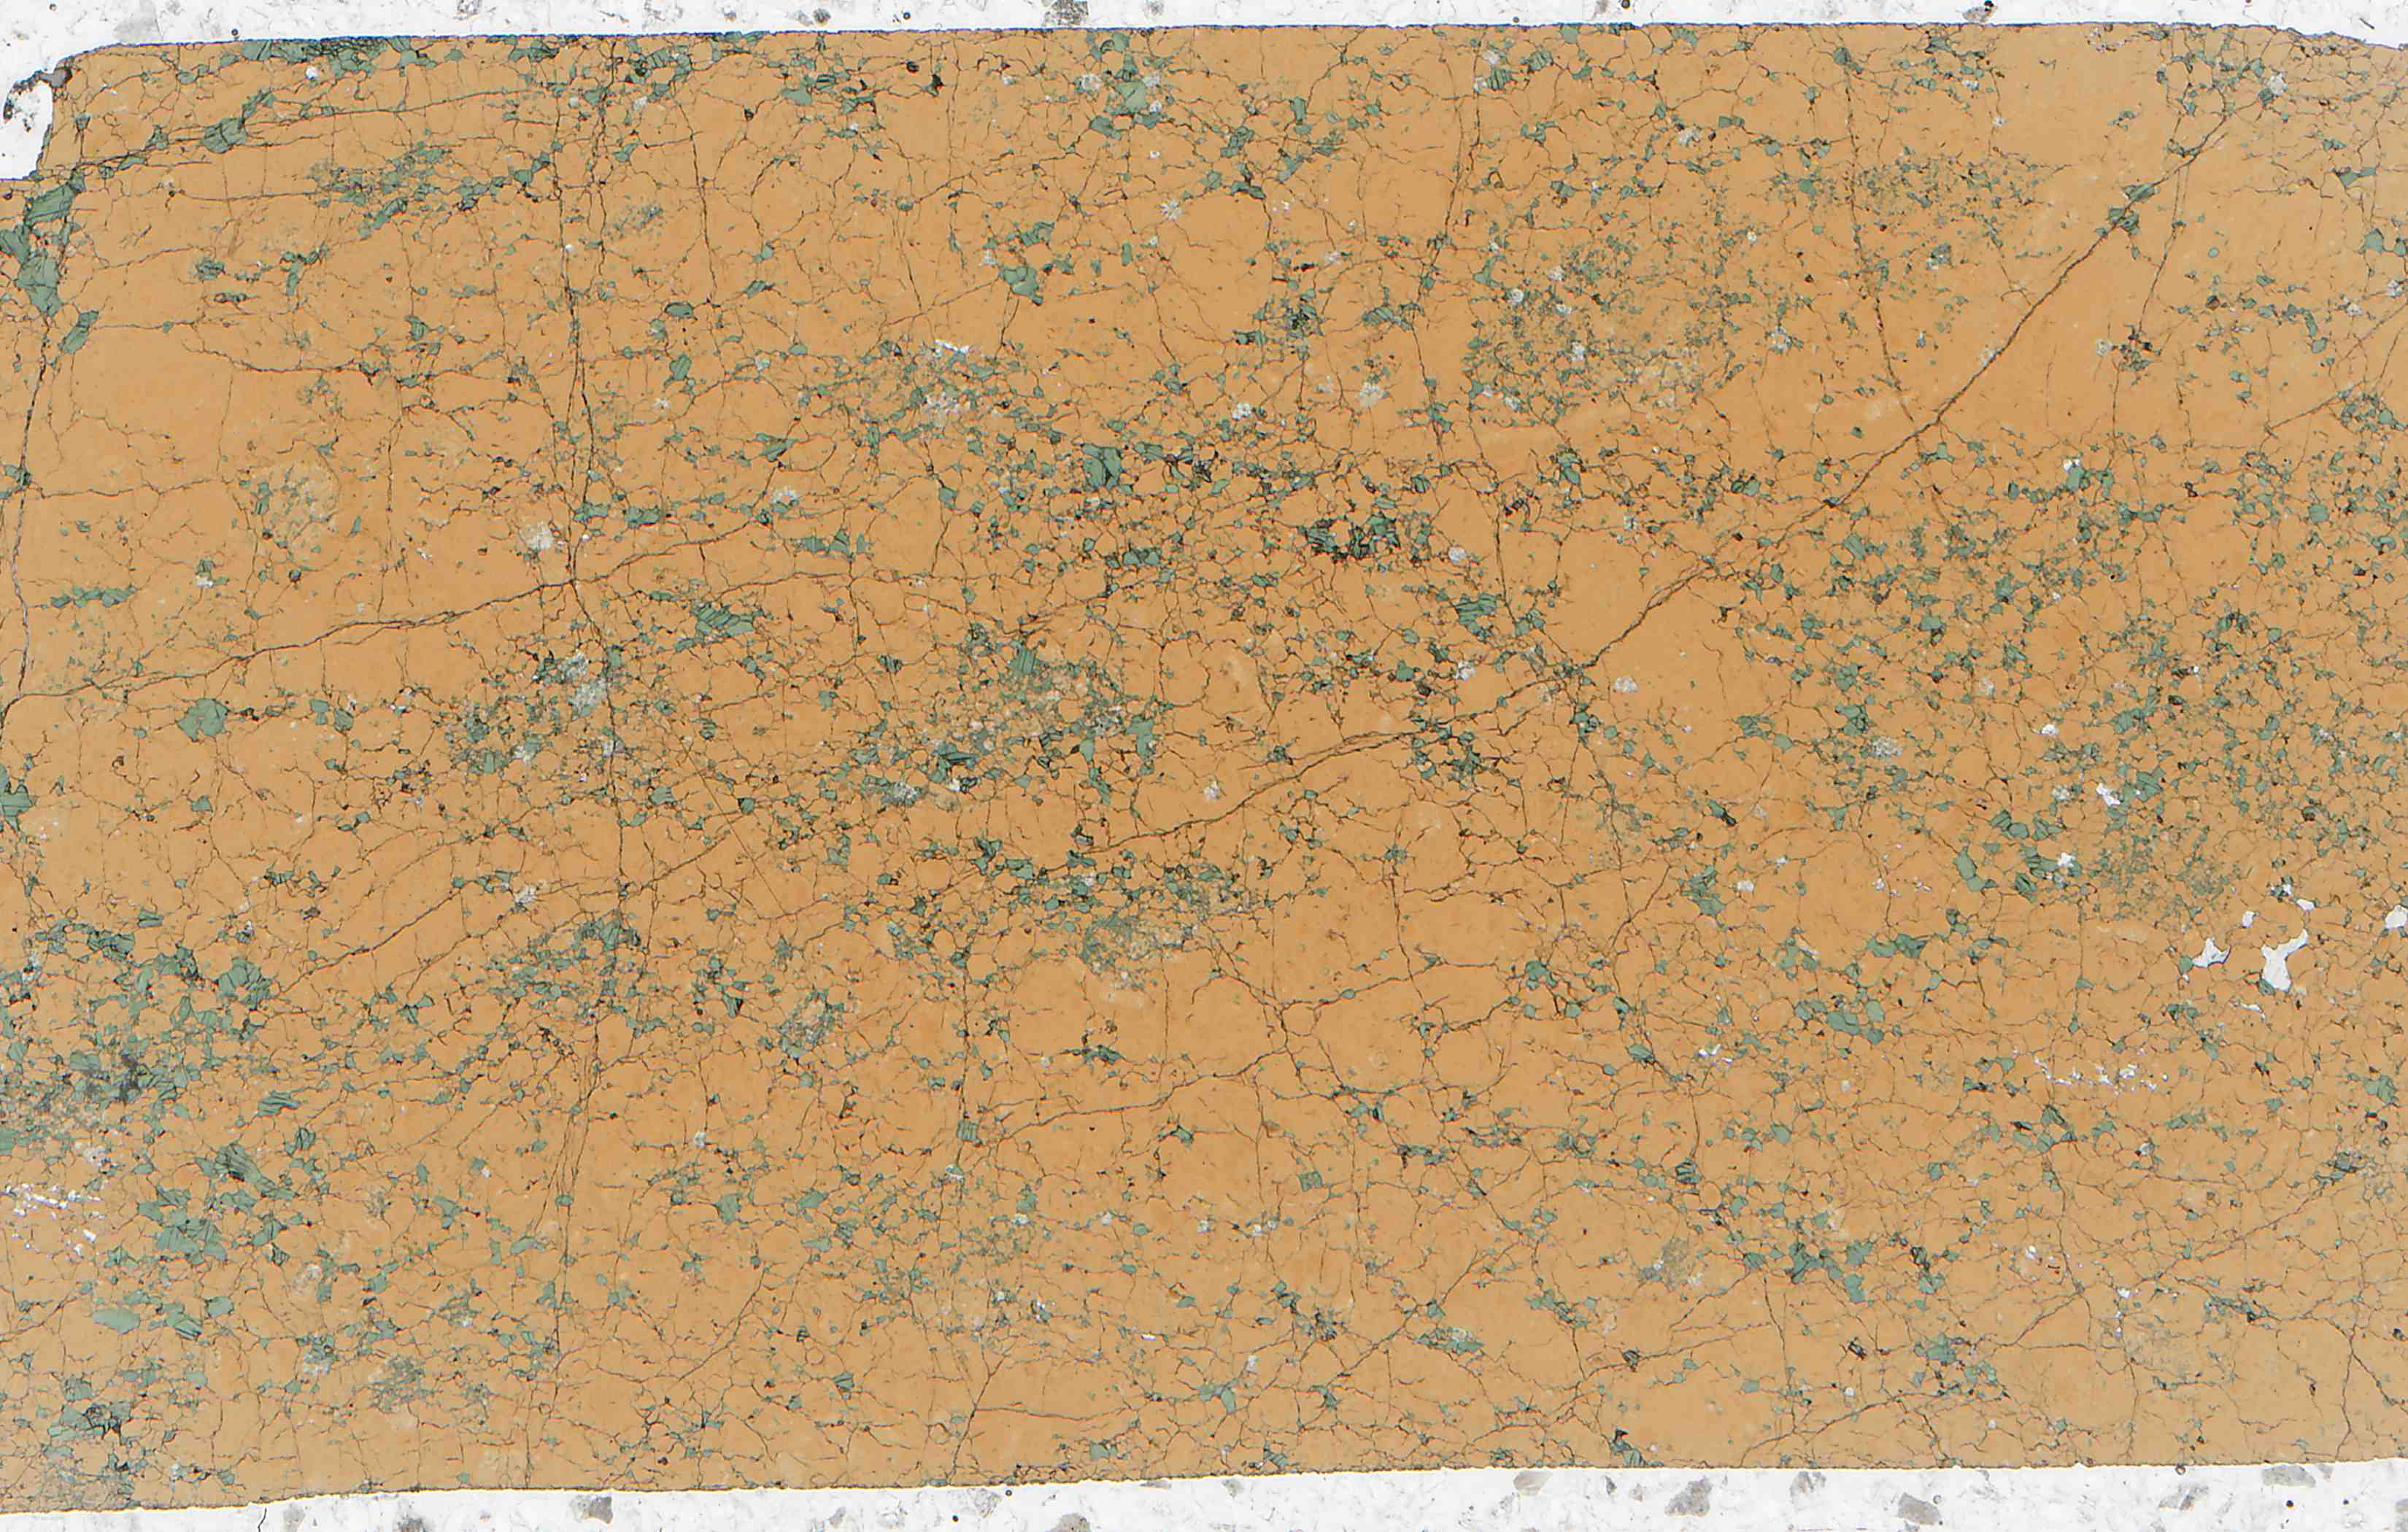 Bohemia Czech Republic garnetite eclogite in thin section